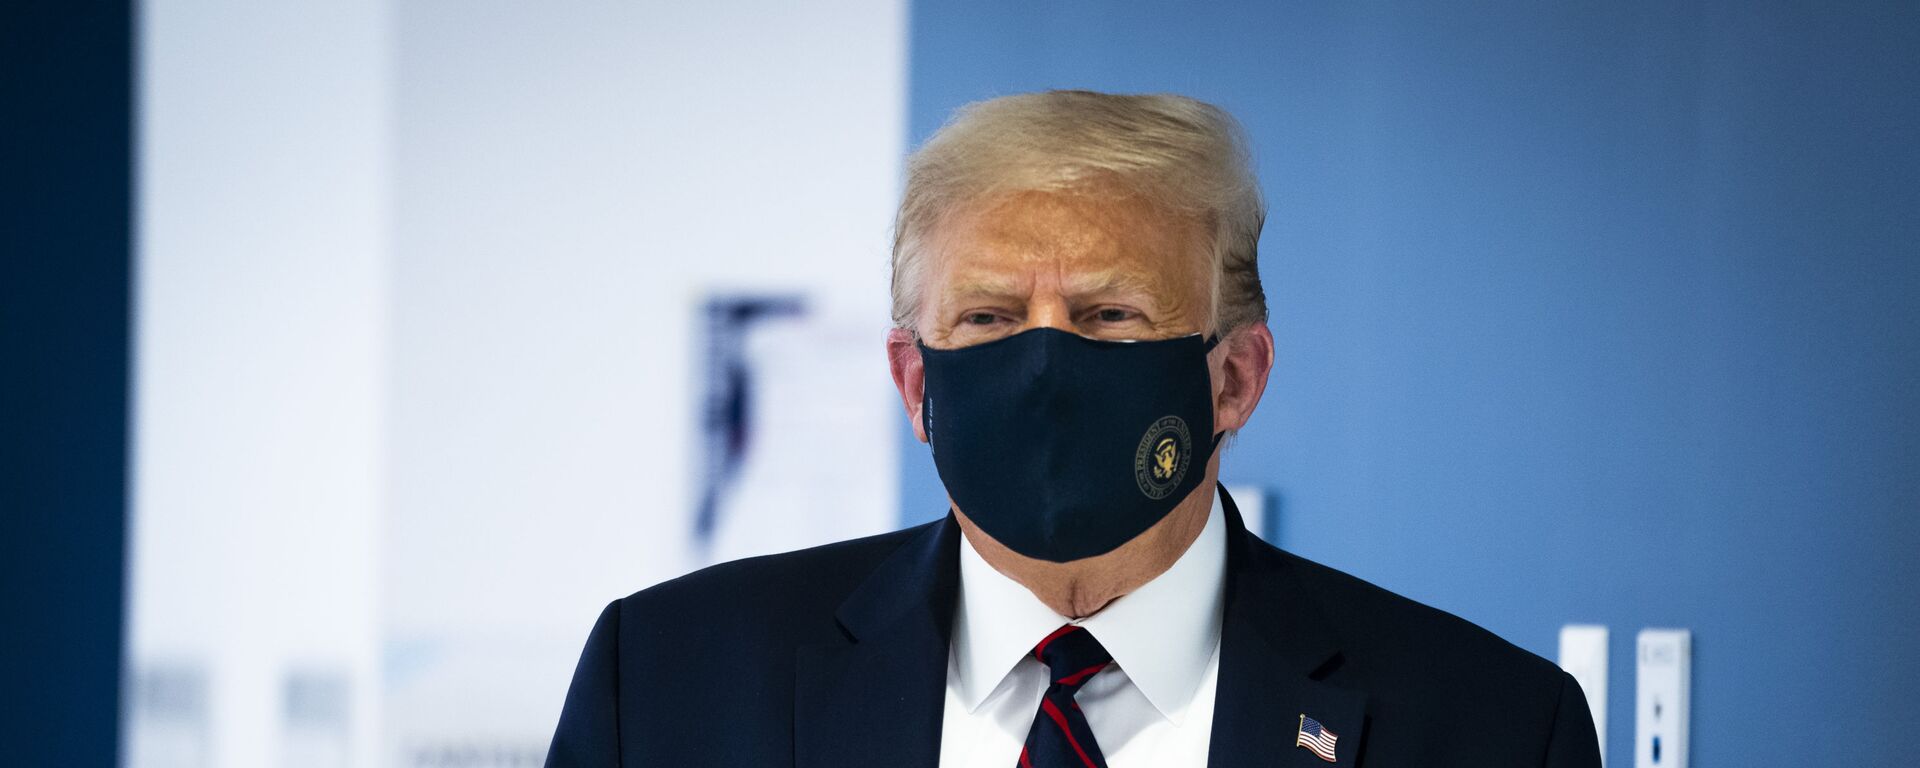 Президент США Дональд Трамп в защитной маске - Sputnik Латвия, 1920, 02.10.2020